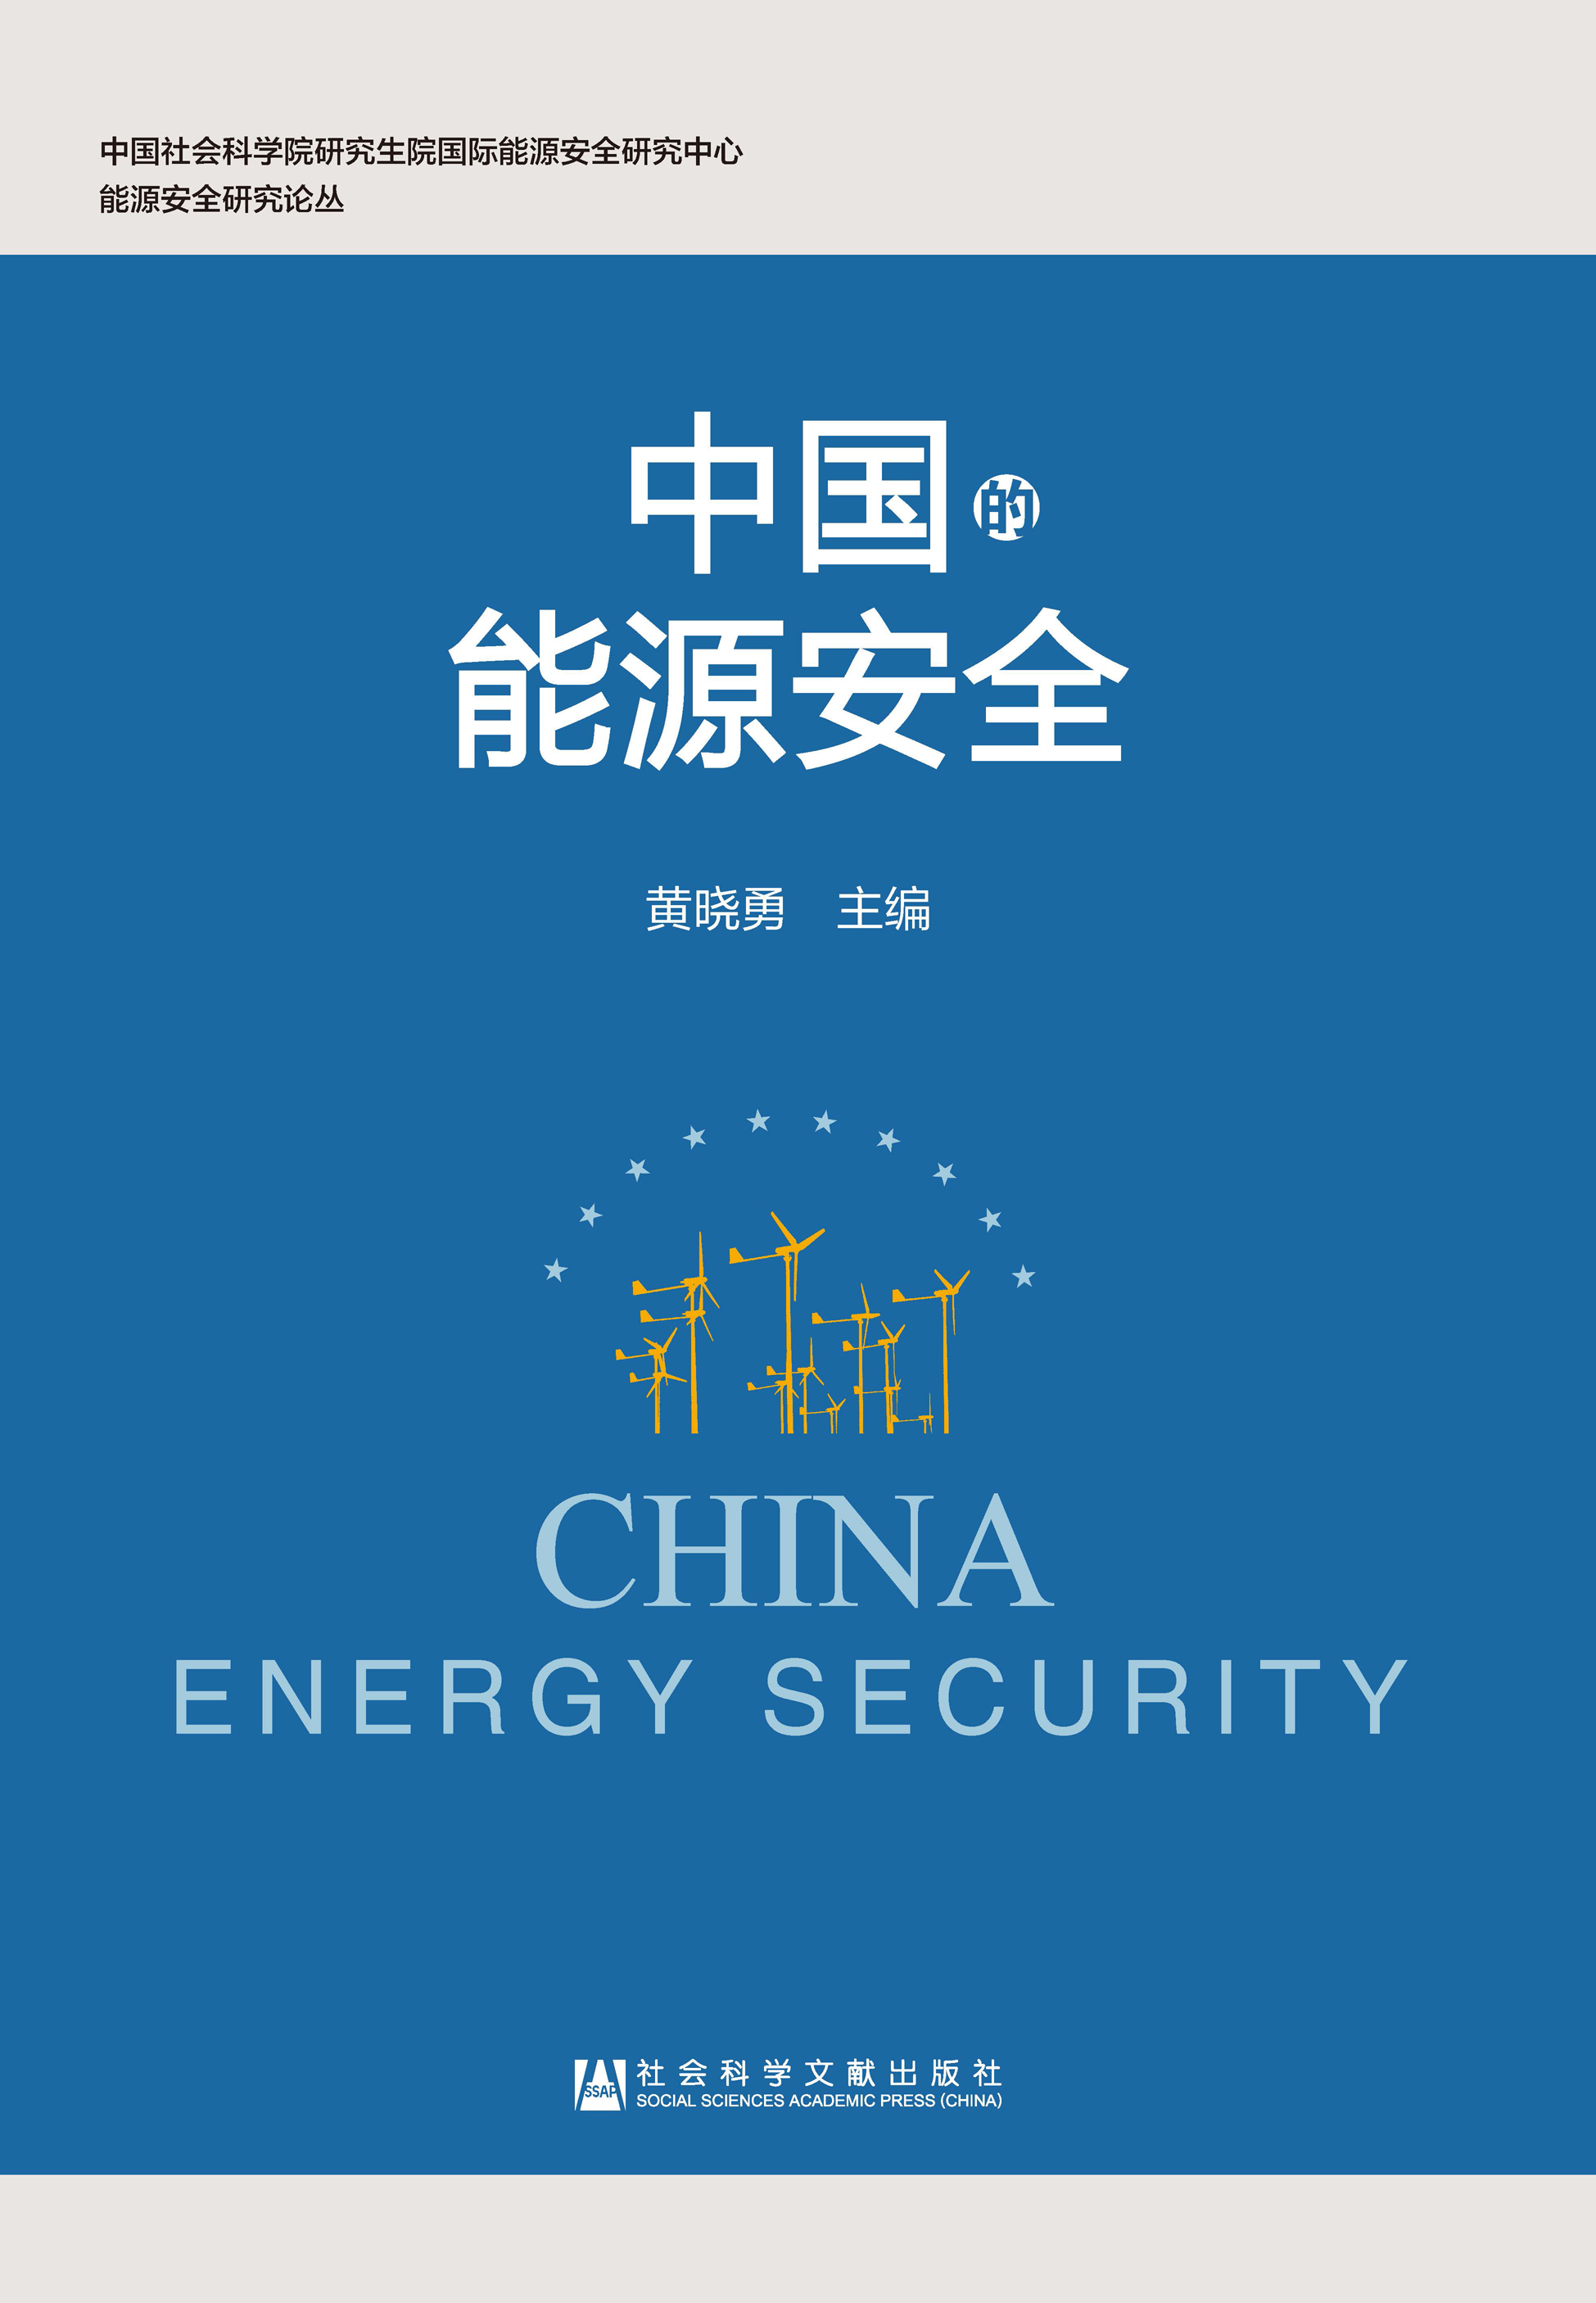 中国的能源安全